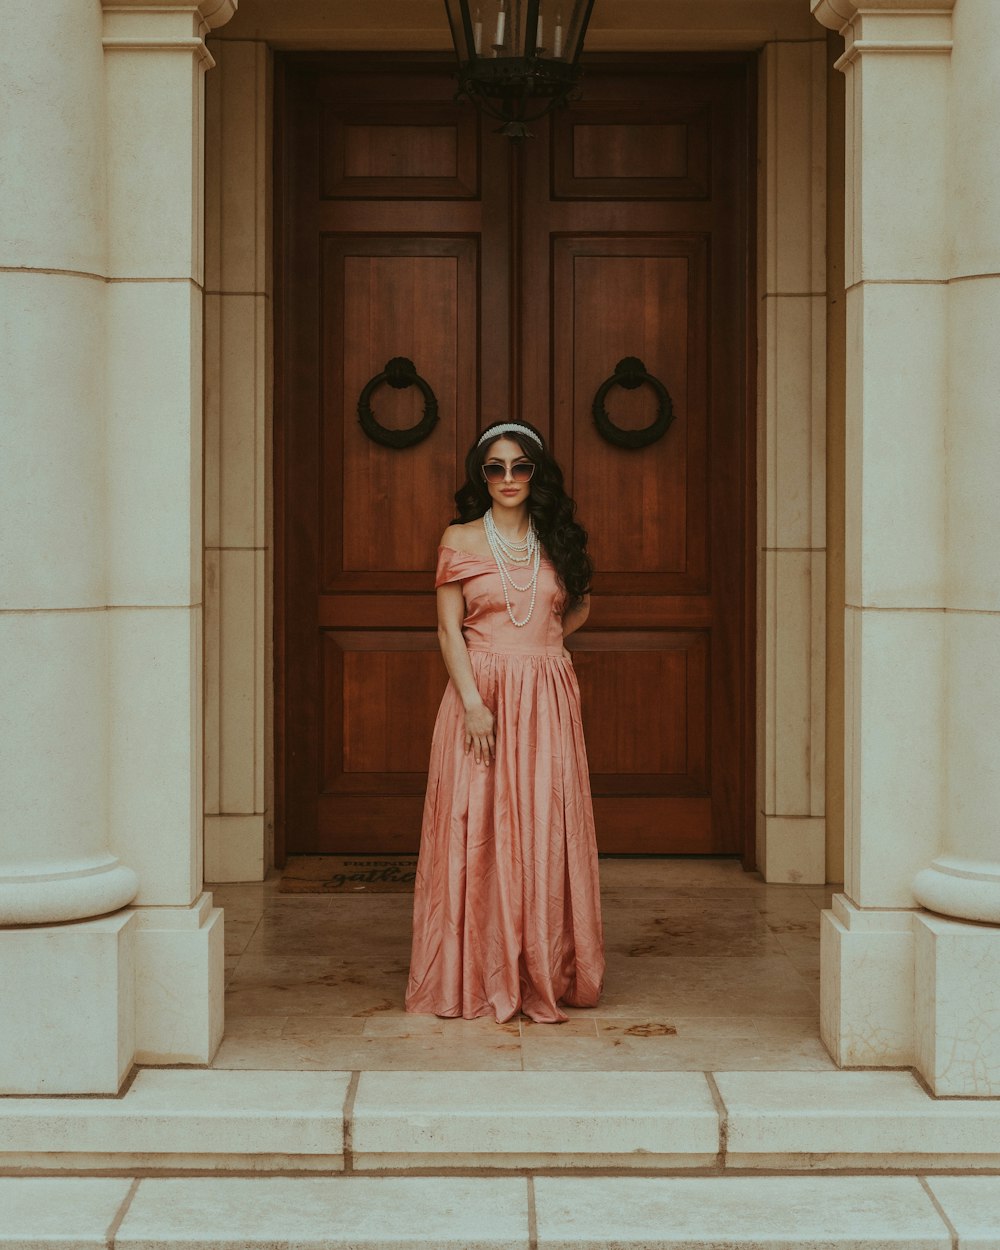 ドアの前に立つピンクのドレスを着た女性